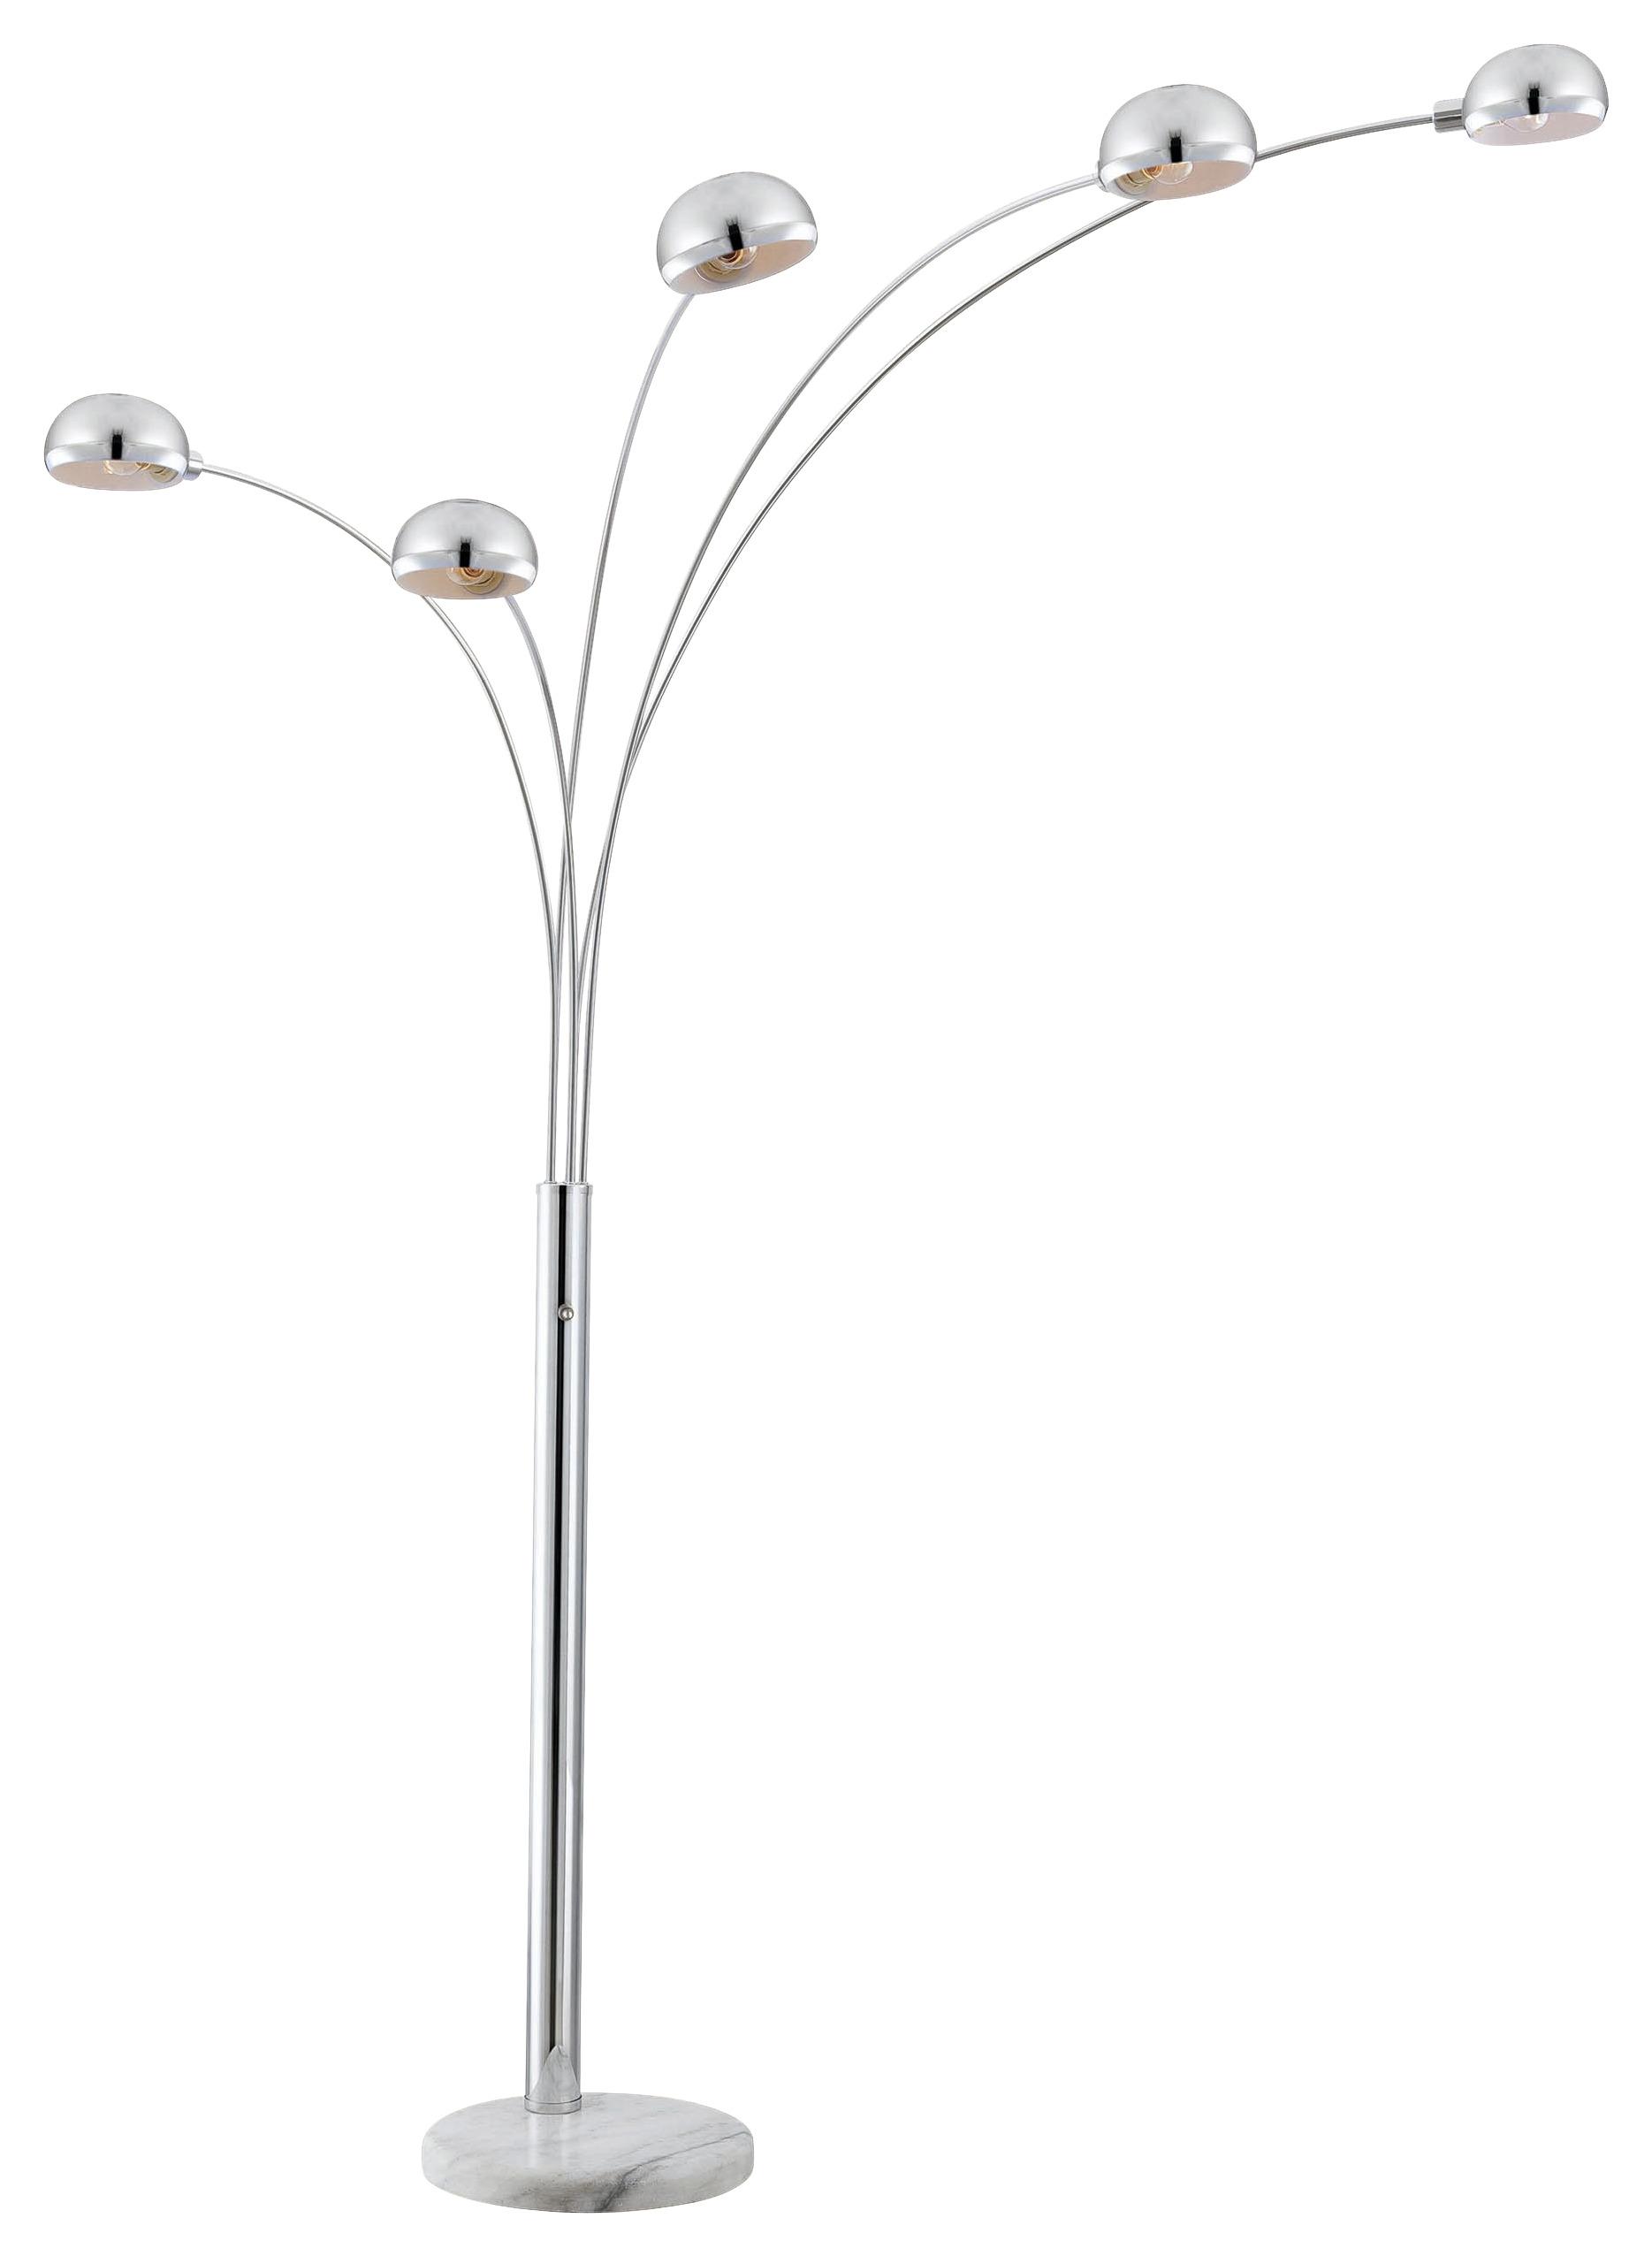 Stojacia Lampa Turle V: 200cm, 40 Watt - chrómová, Moderný, kov (130/200cm) - Modern Living